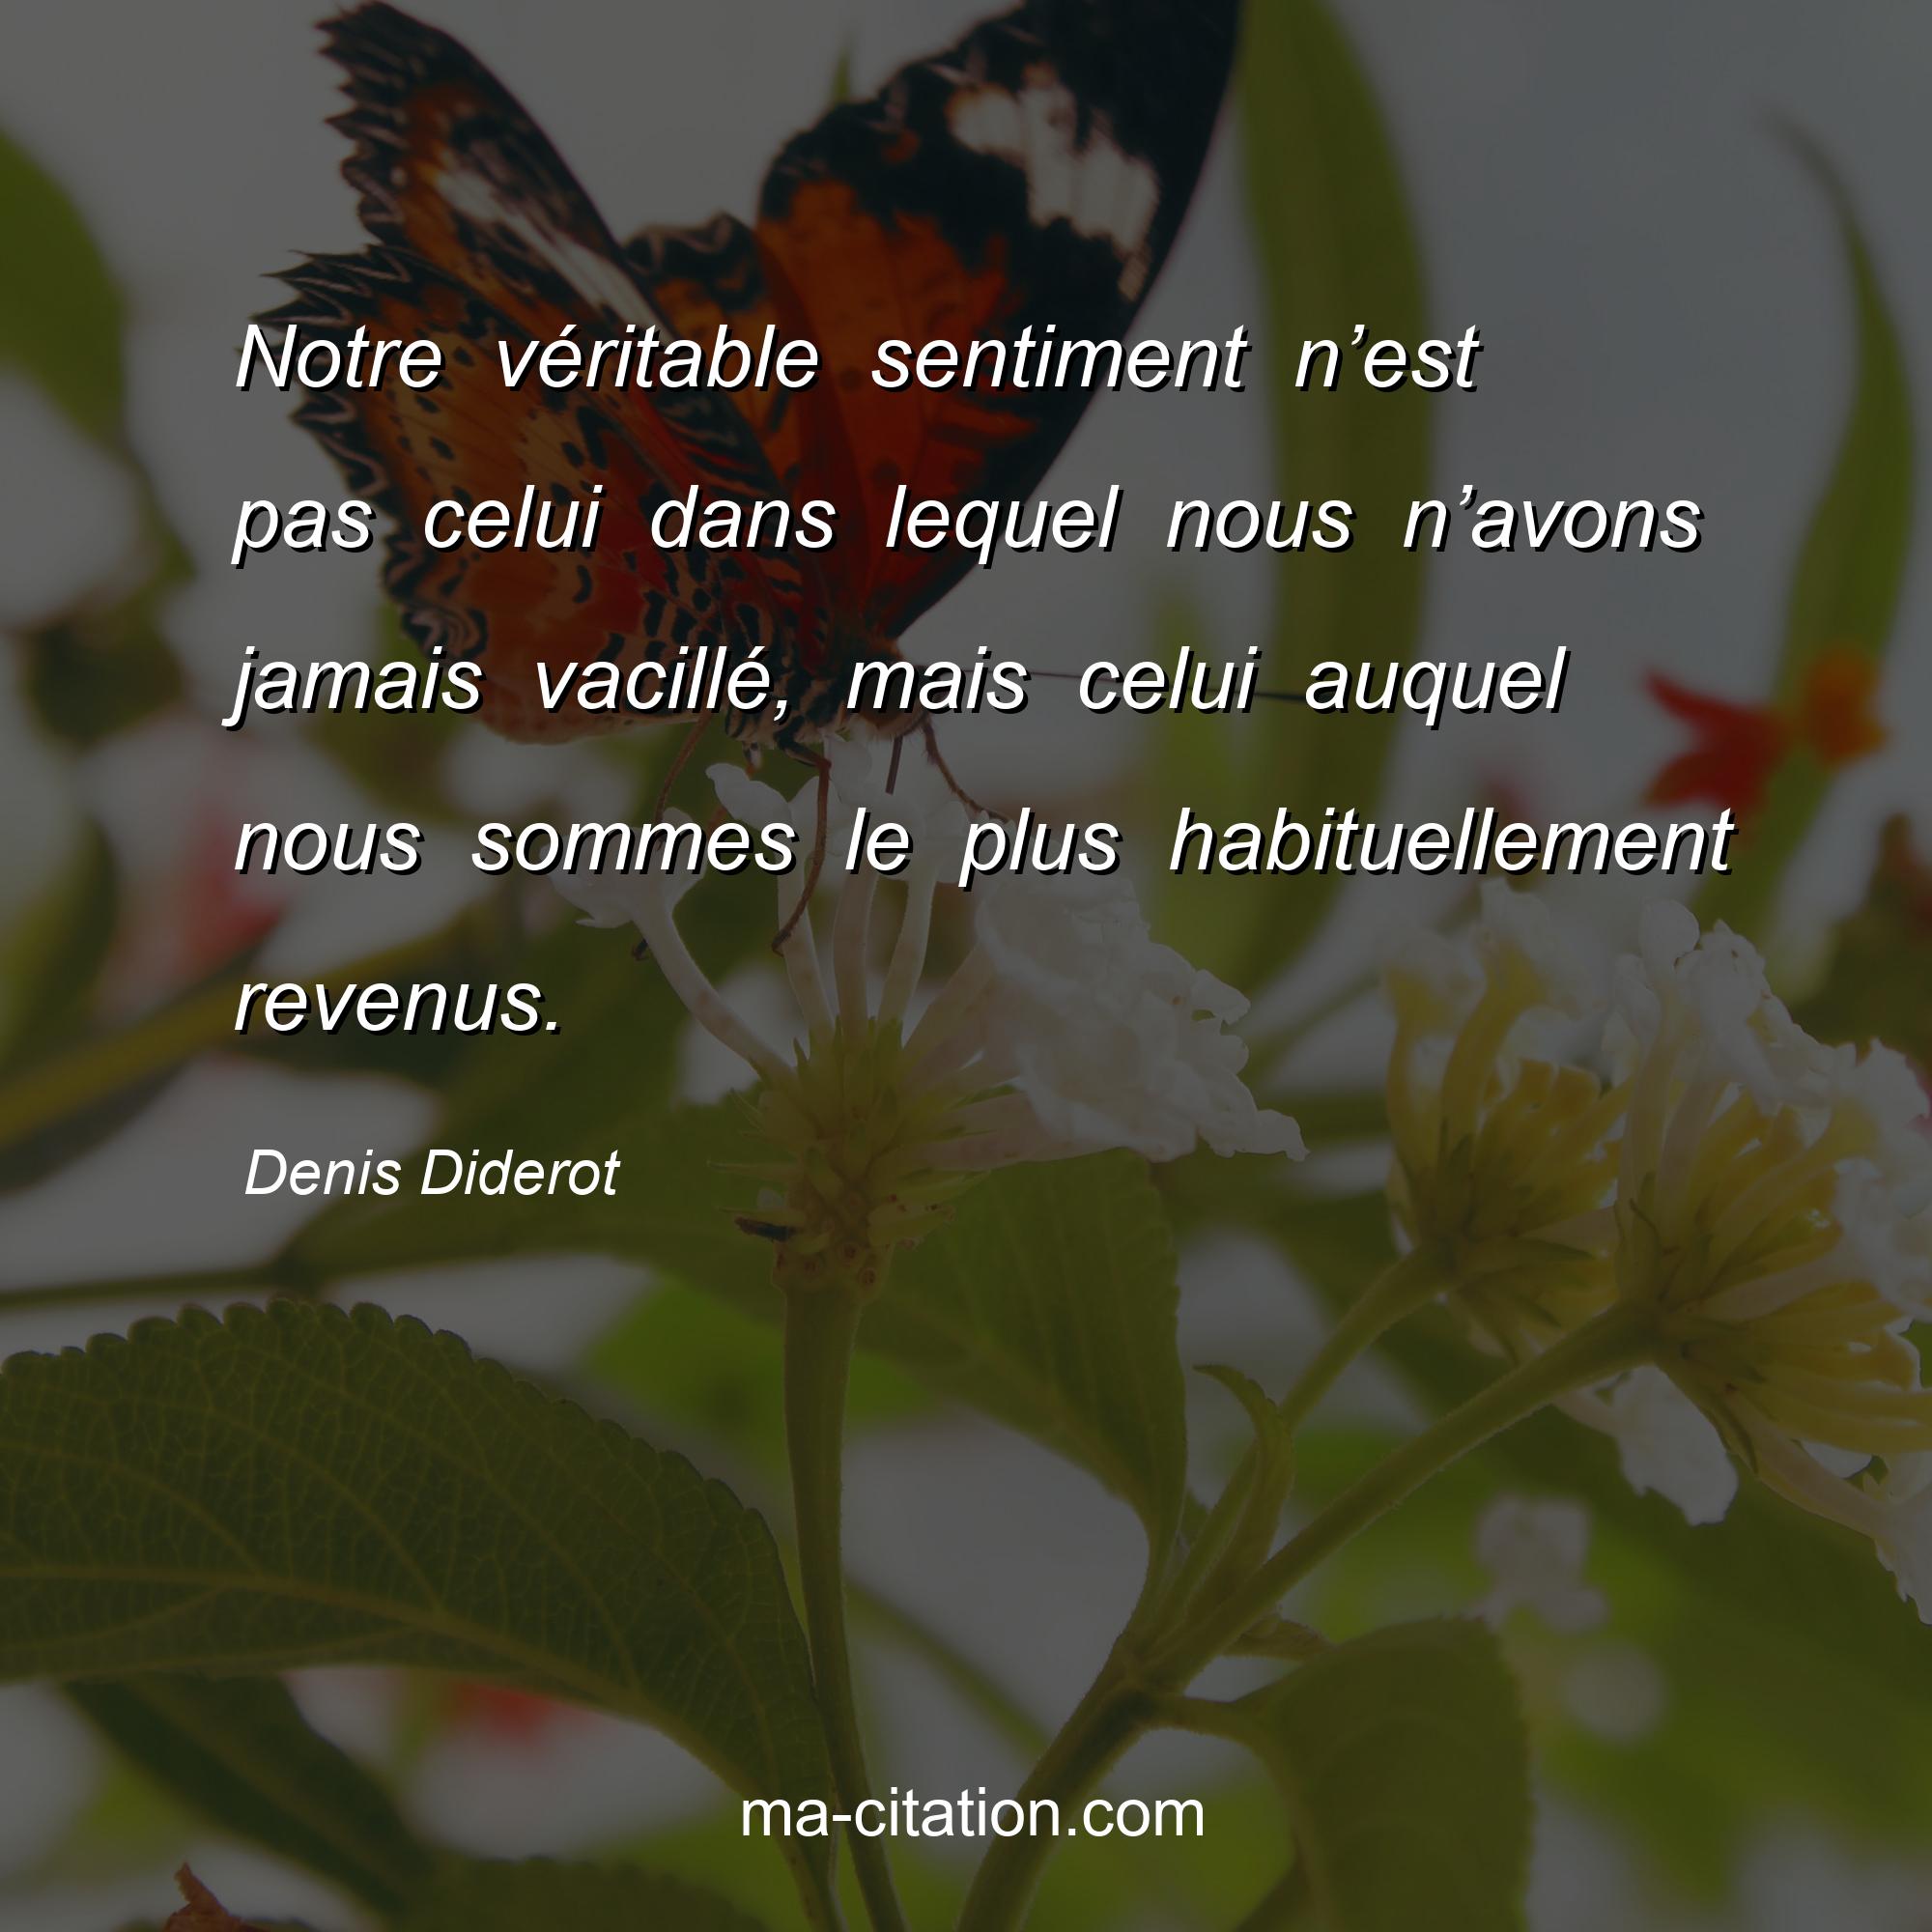 Denis Diderot : Notre véritable sentiment n’est pas celui dans lequel nous n’avons jamais vacillé, mais celui auquel nous sommes le plus habituellement revenus.